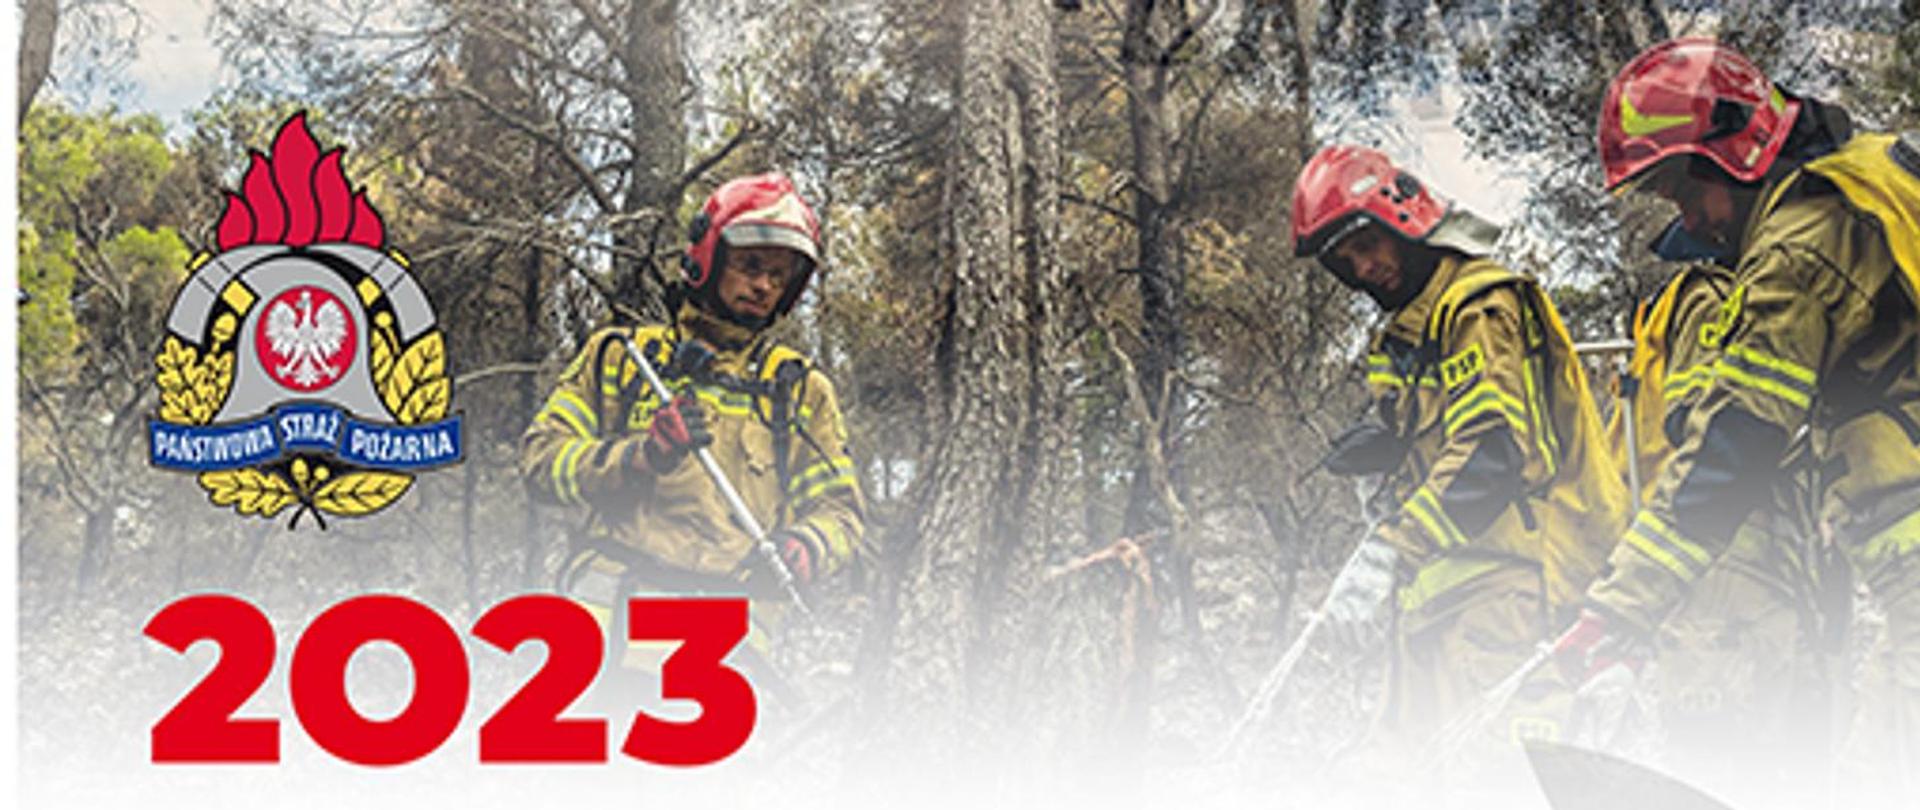 konkurs kalendarzowy Państwowej Straży Pożarnej na 2023